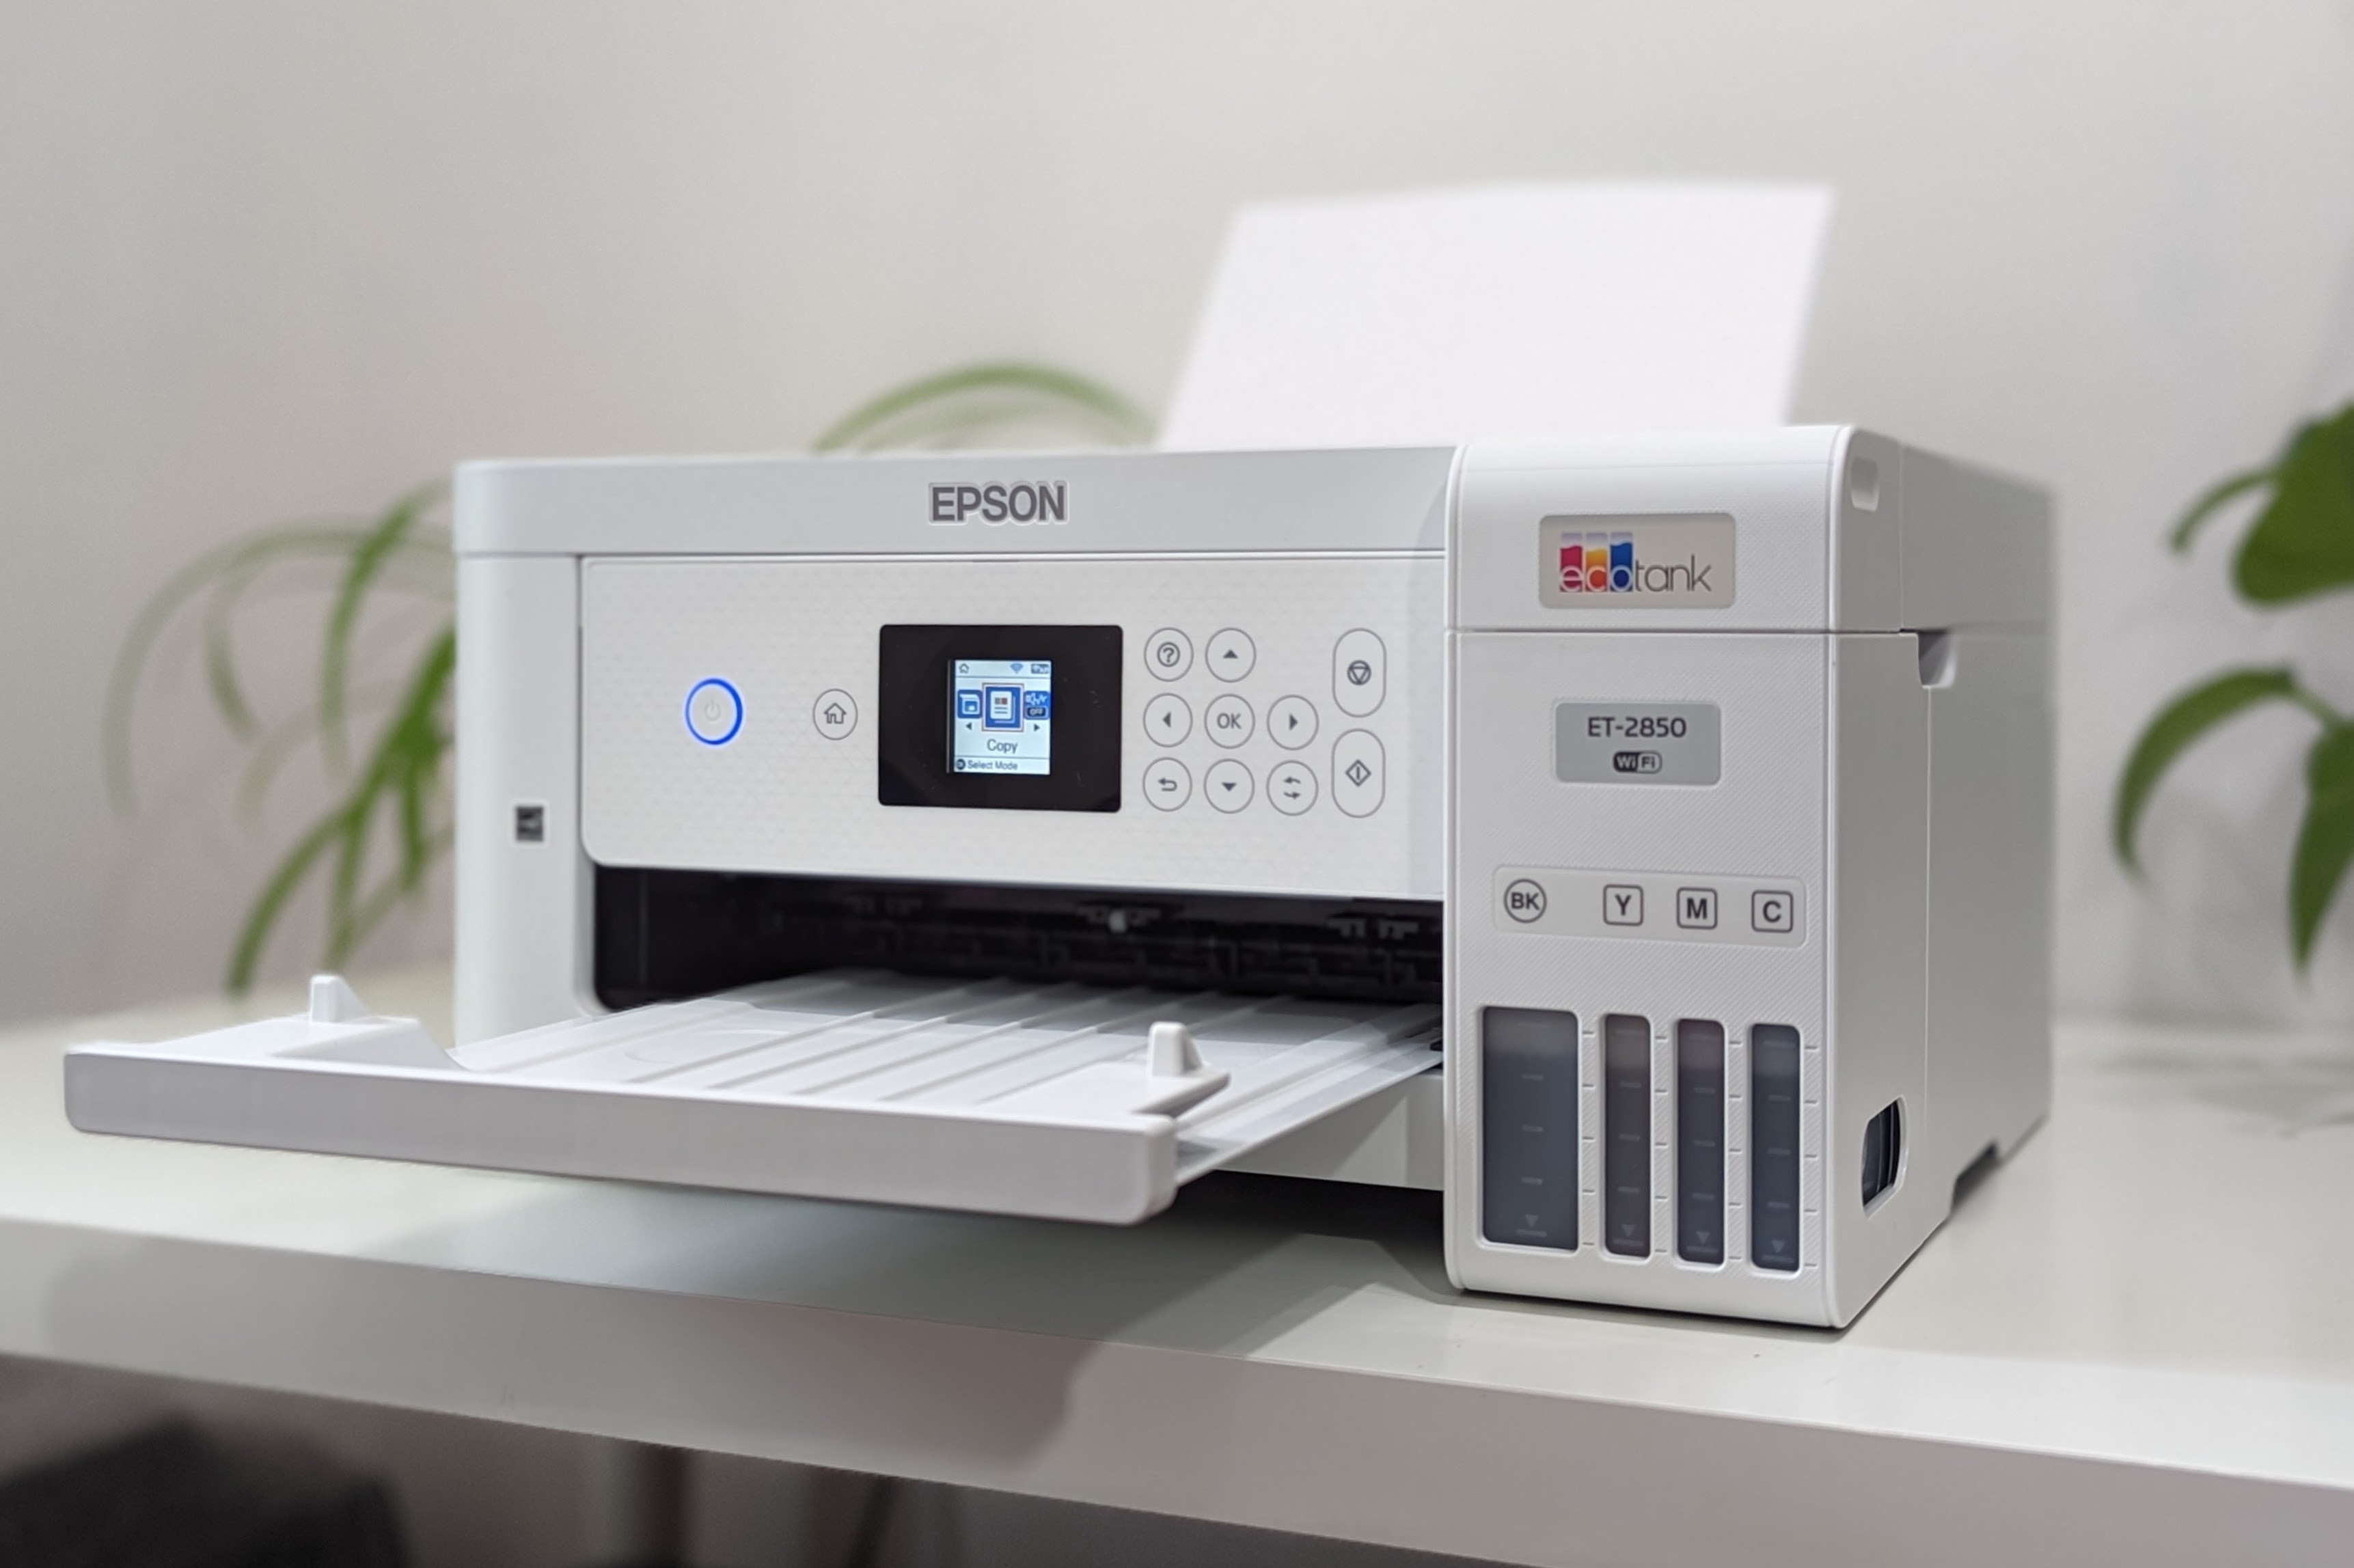 EPSON - Imprimante multifonction EcoTank ET-2820…